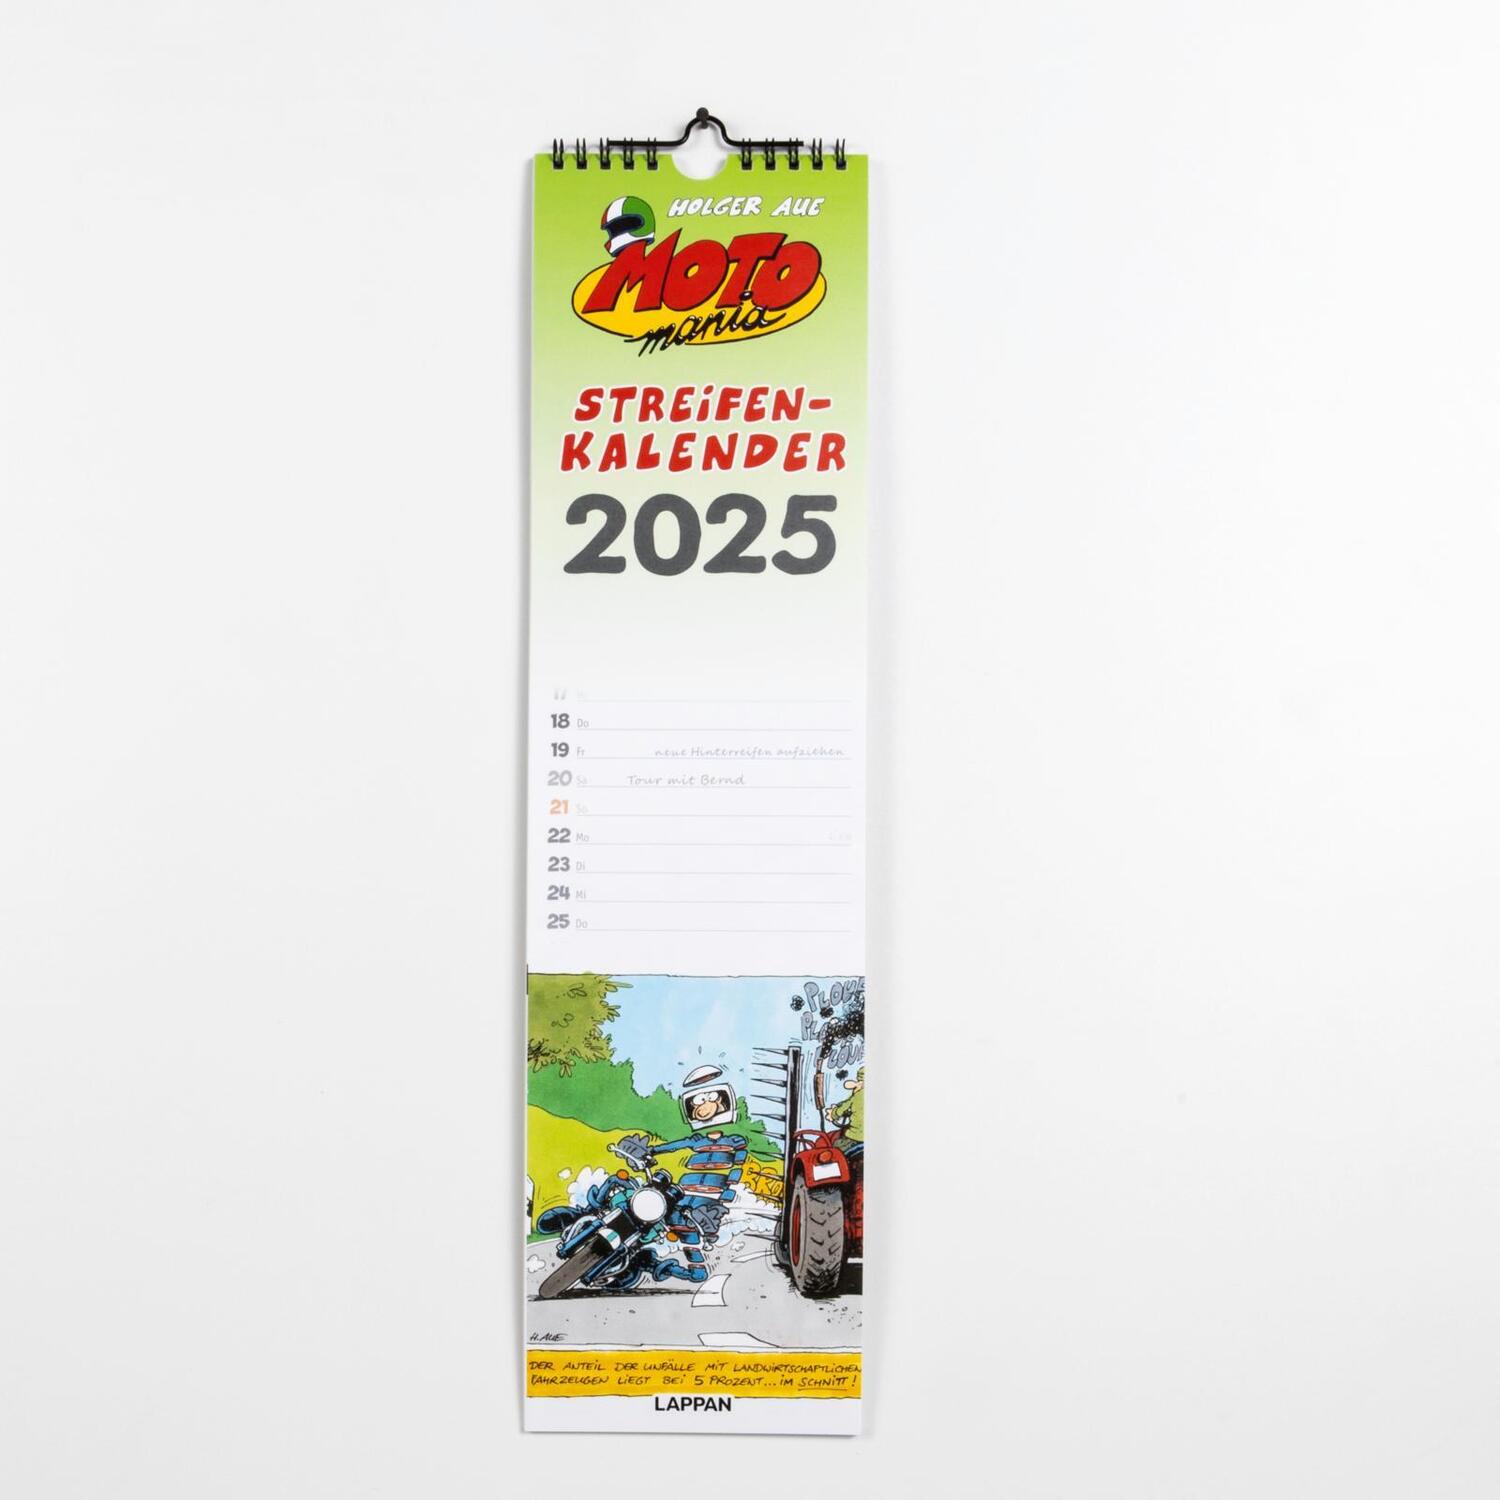 Bild: 9783830321477 | MOTOmania Streifenkalender 2025 | Holger Aue | Kalender | MOTOmania